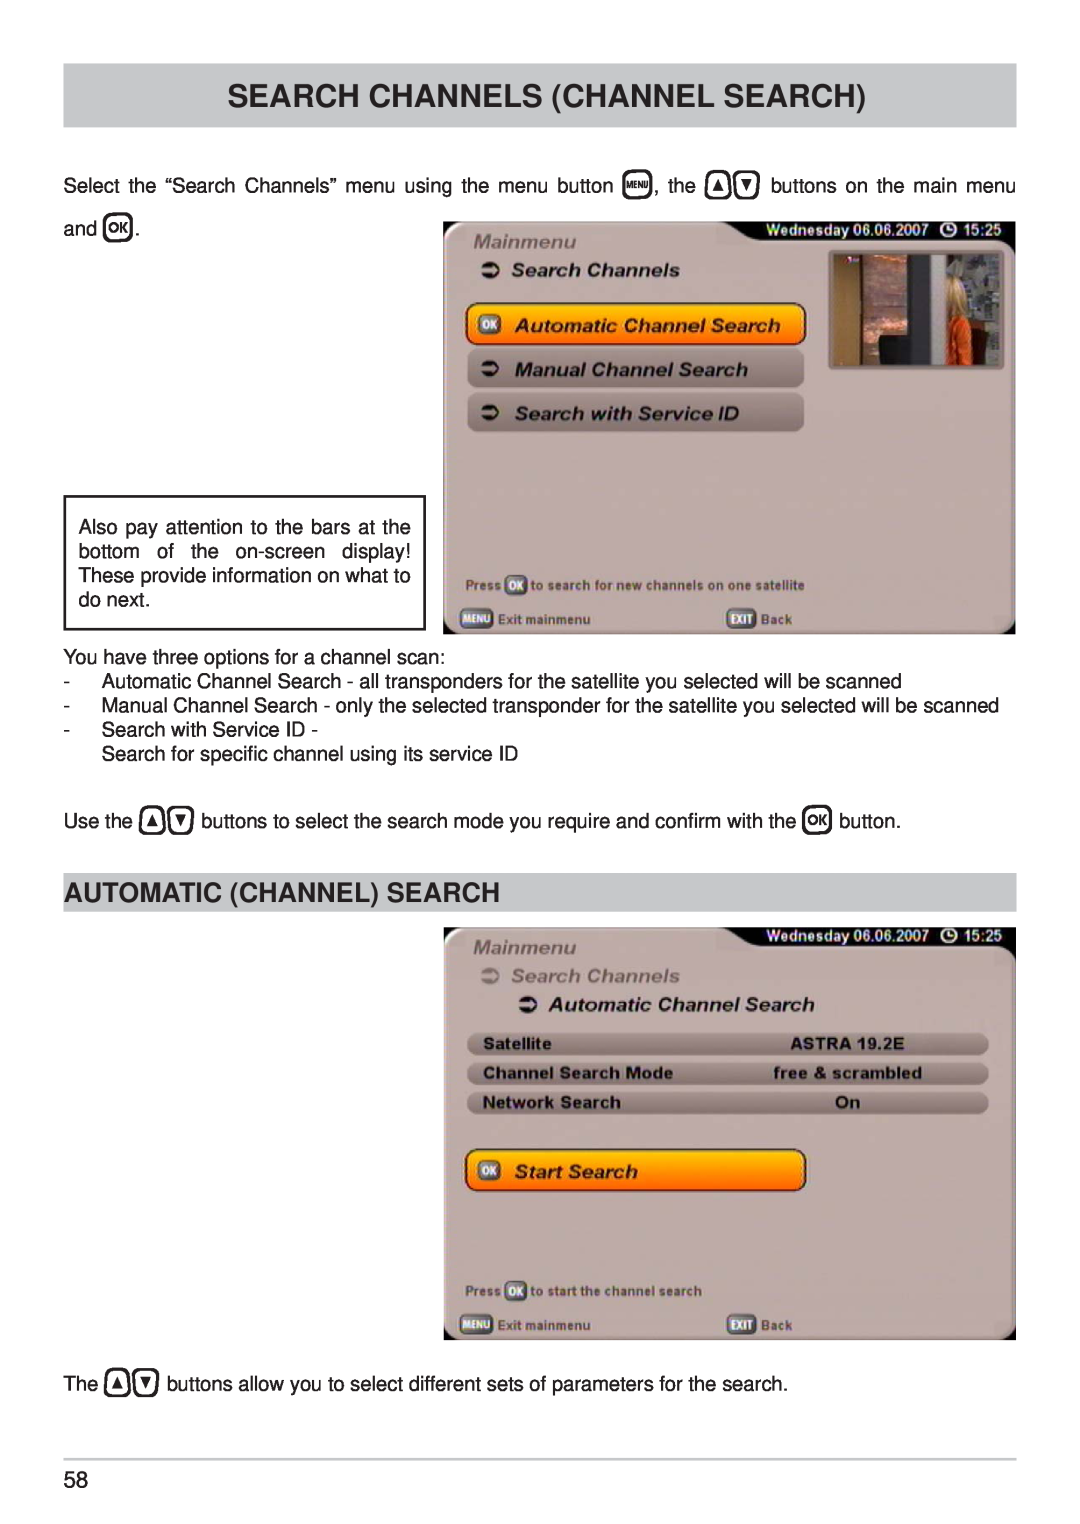 Kathrein UFS 710si, UFS 710sw manual Search Channels Channel Search, Automatic Channel Search 